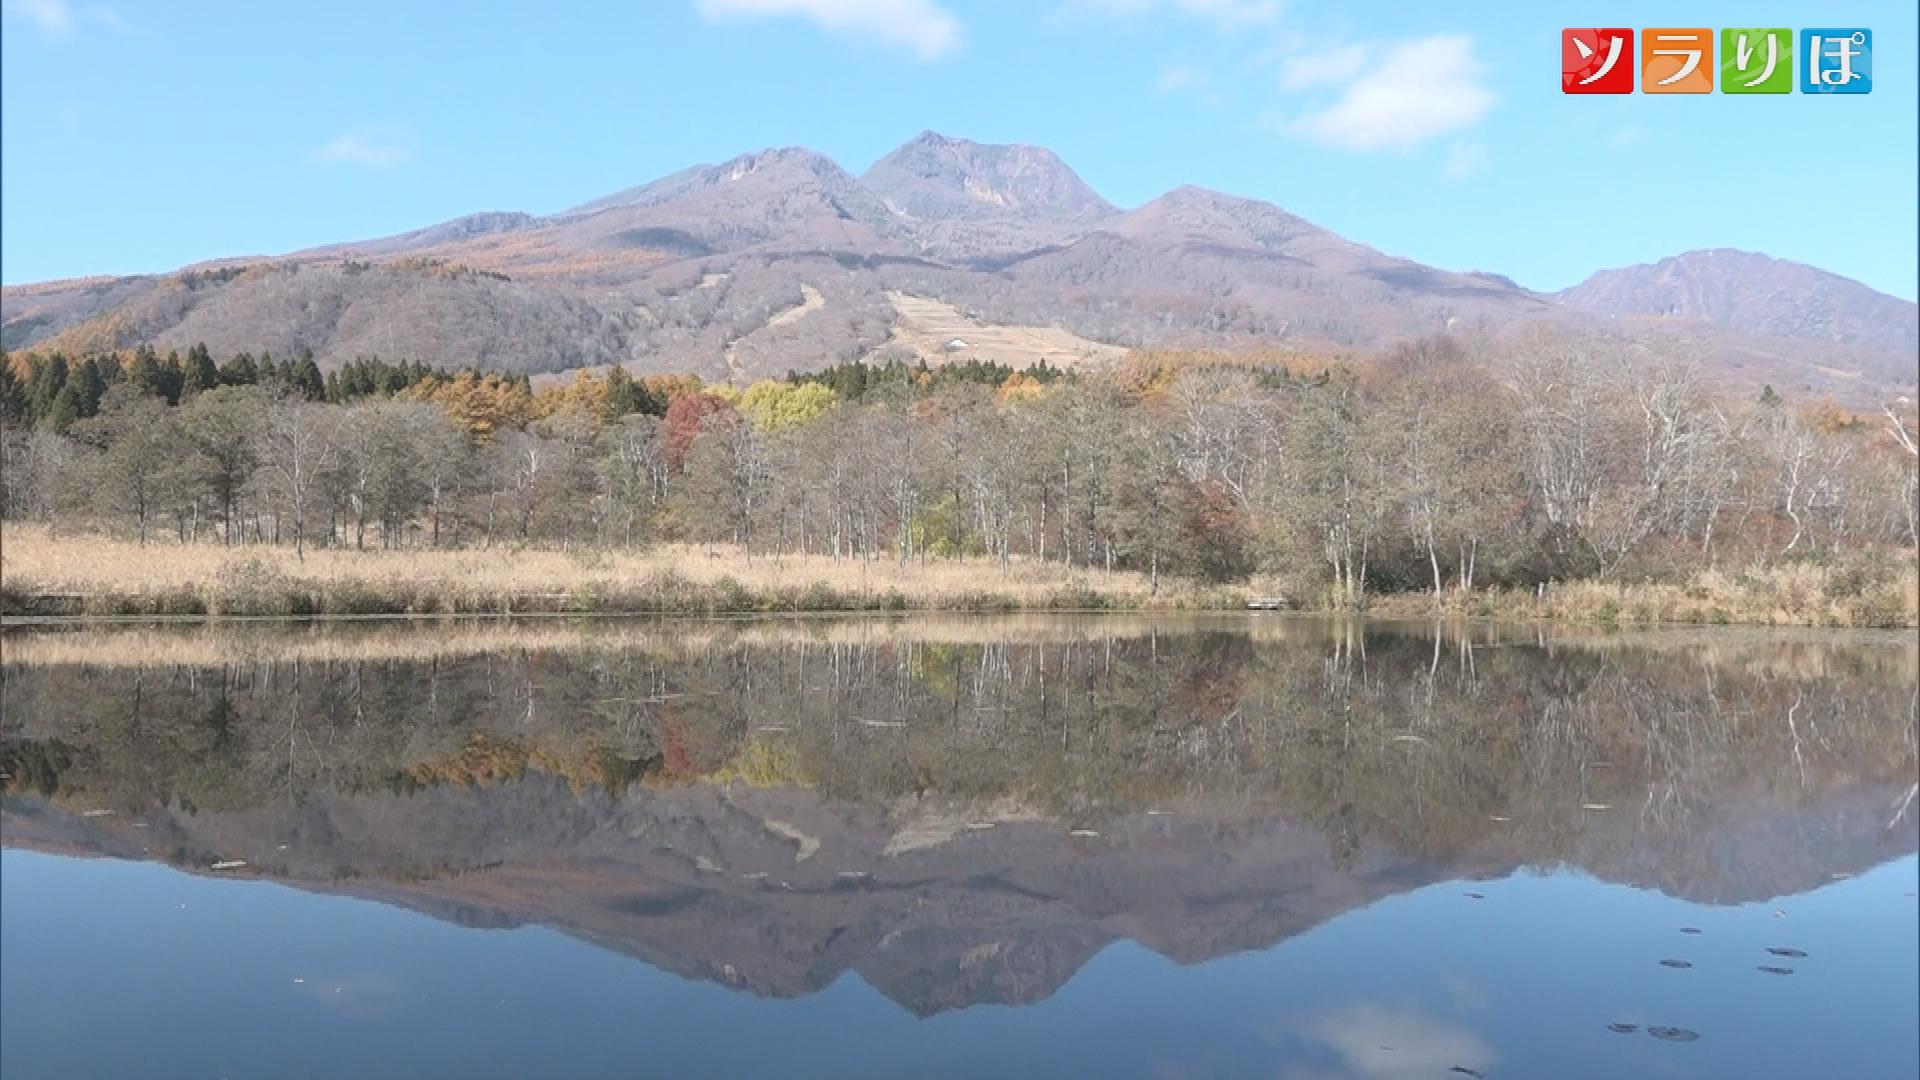 絶景「逆さ妙高山」いもり池の水面にはっきり妙高山の姿【新潟】